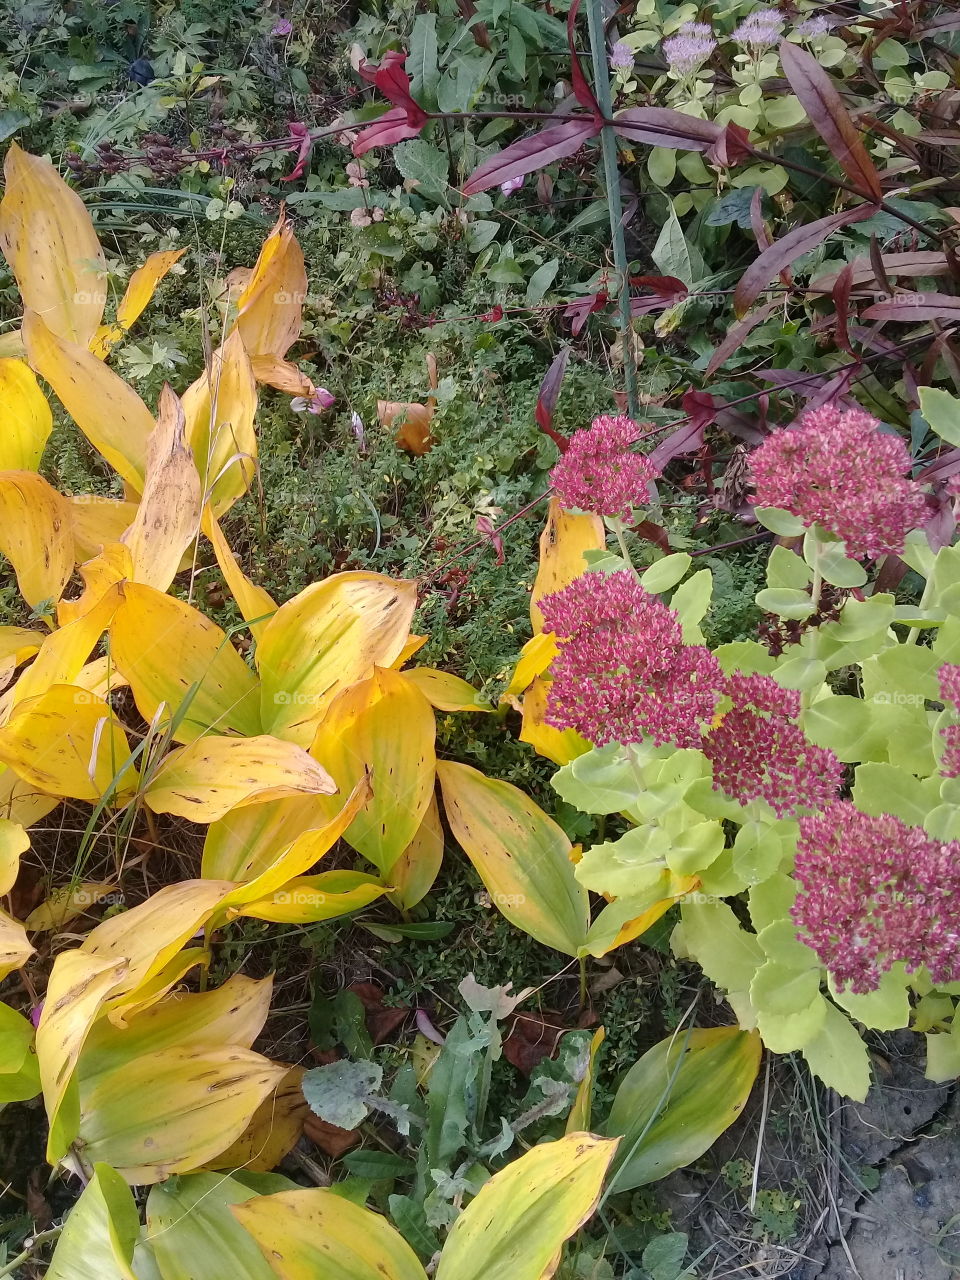 Autumn 's colours